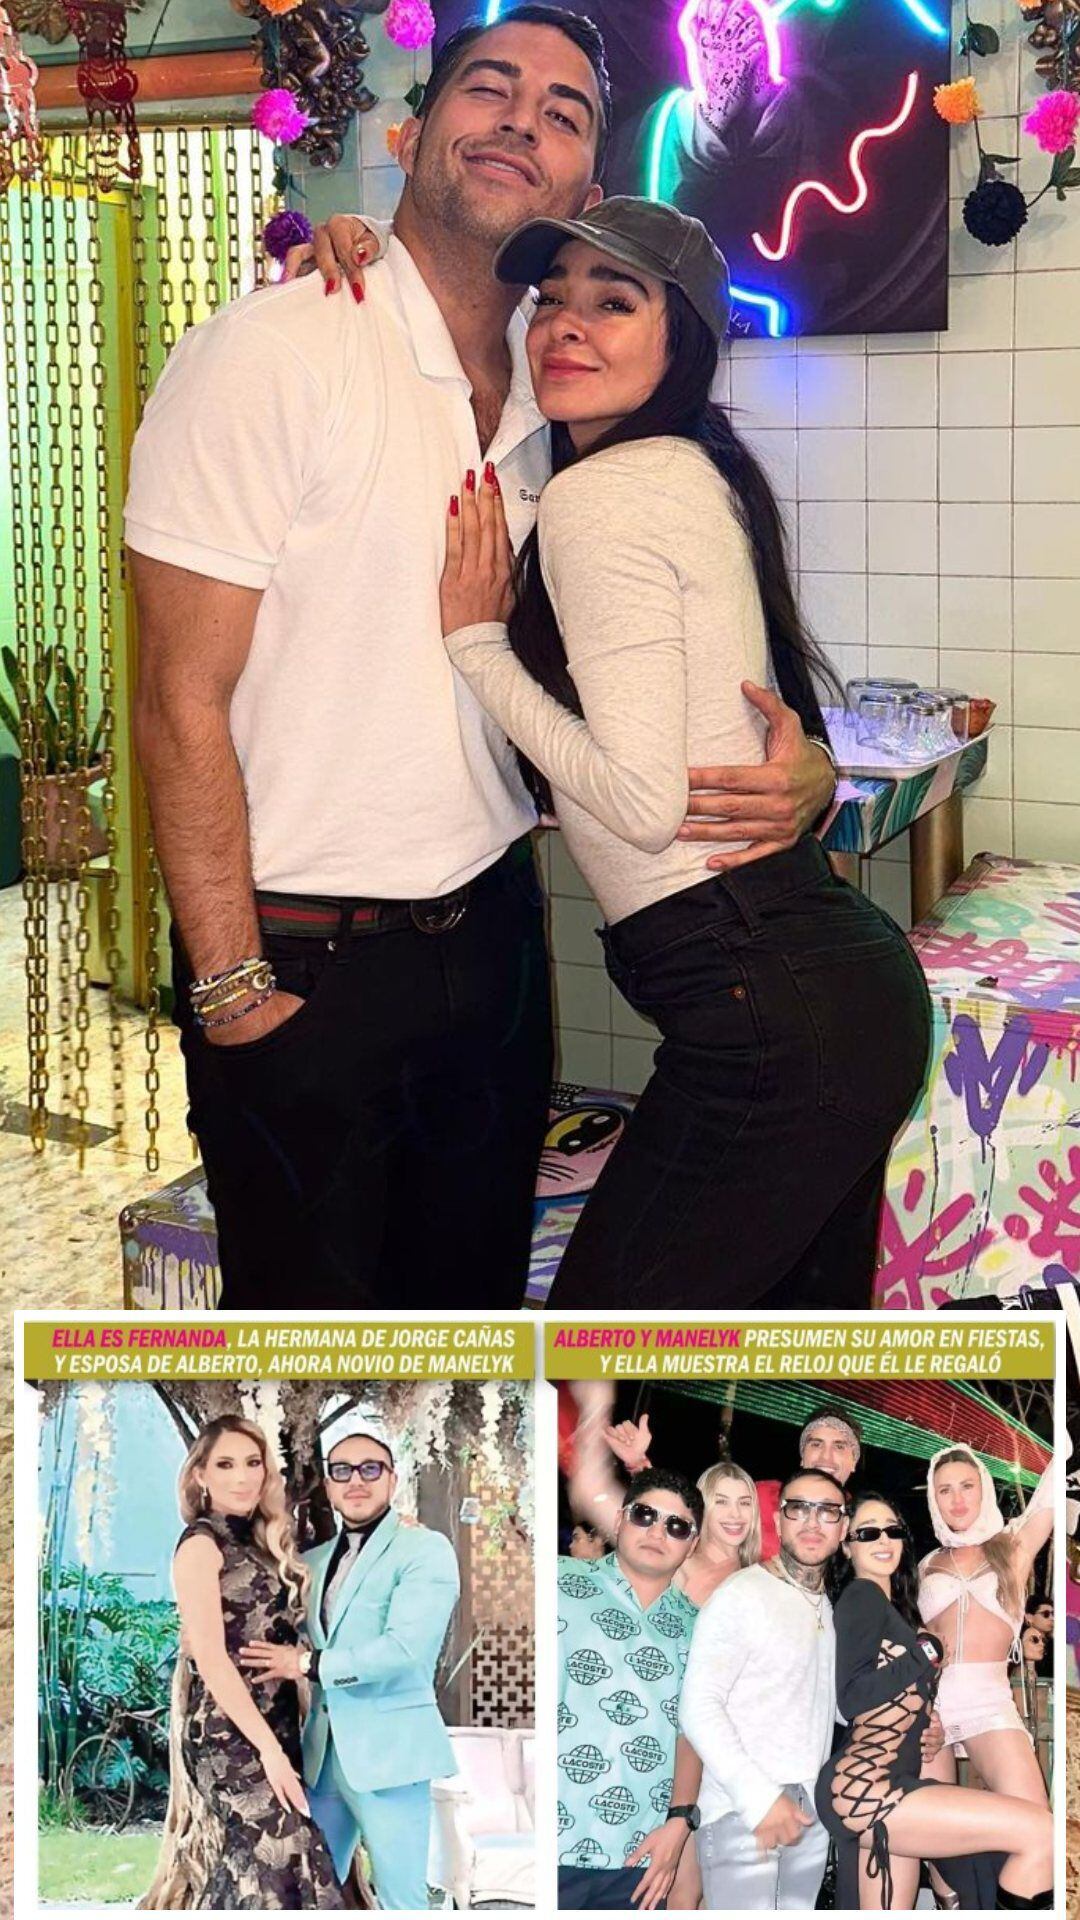 De acuerdo con TVNotas, la influencer inició una relación con el cuñado de Jorge Cañas a sus espaldas y de su hermana, Fernanda.